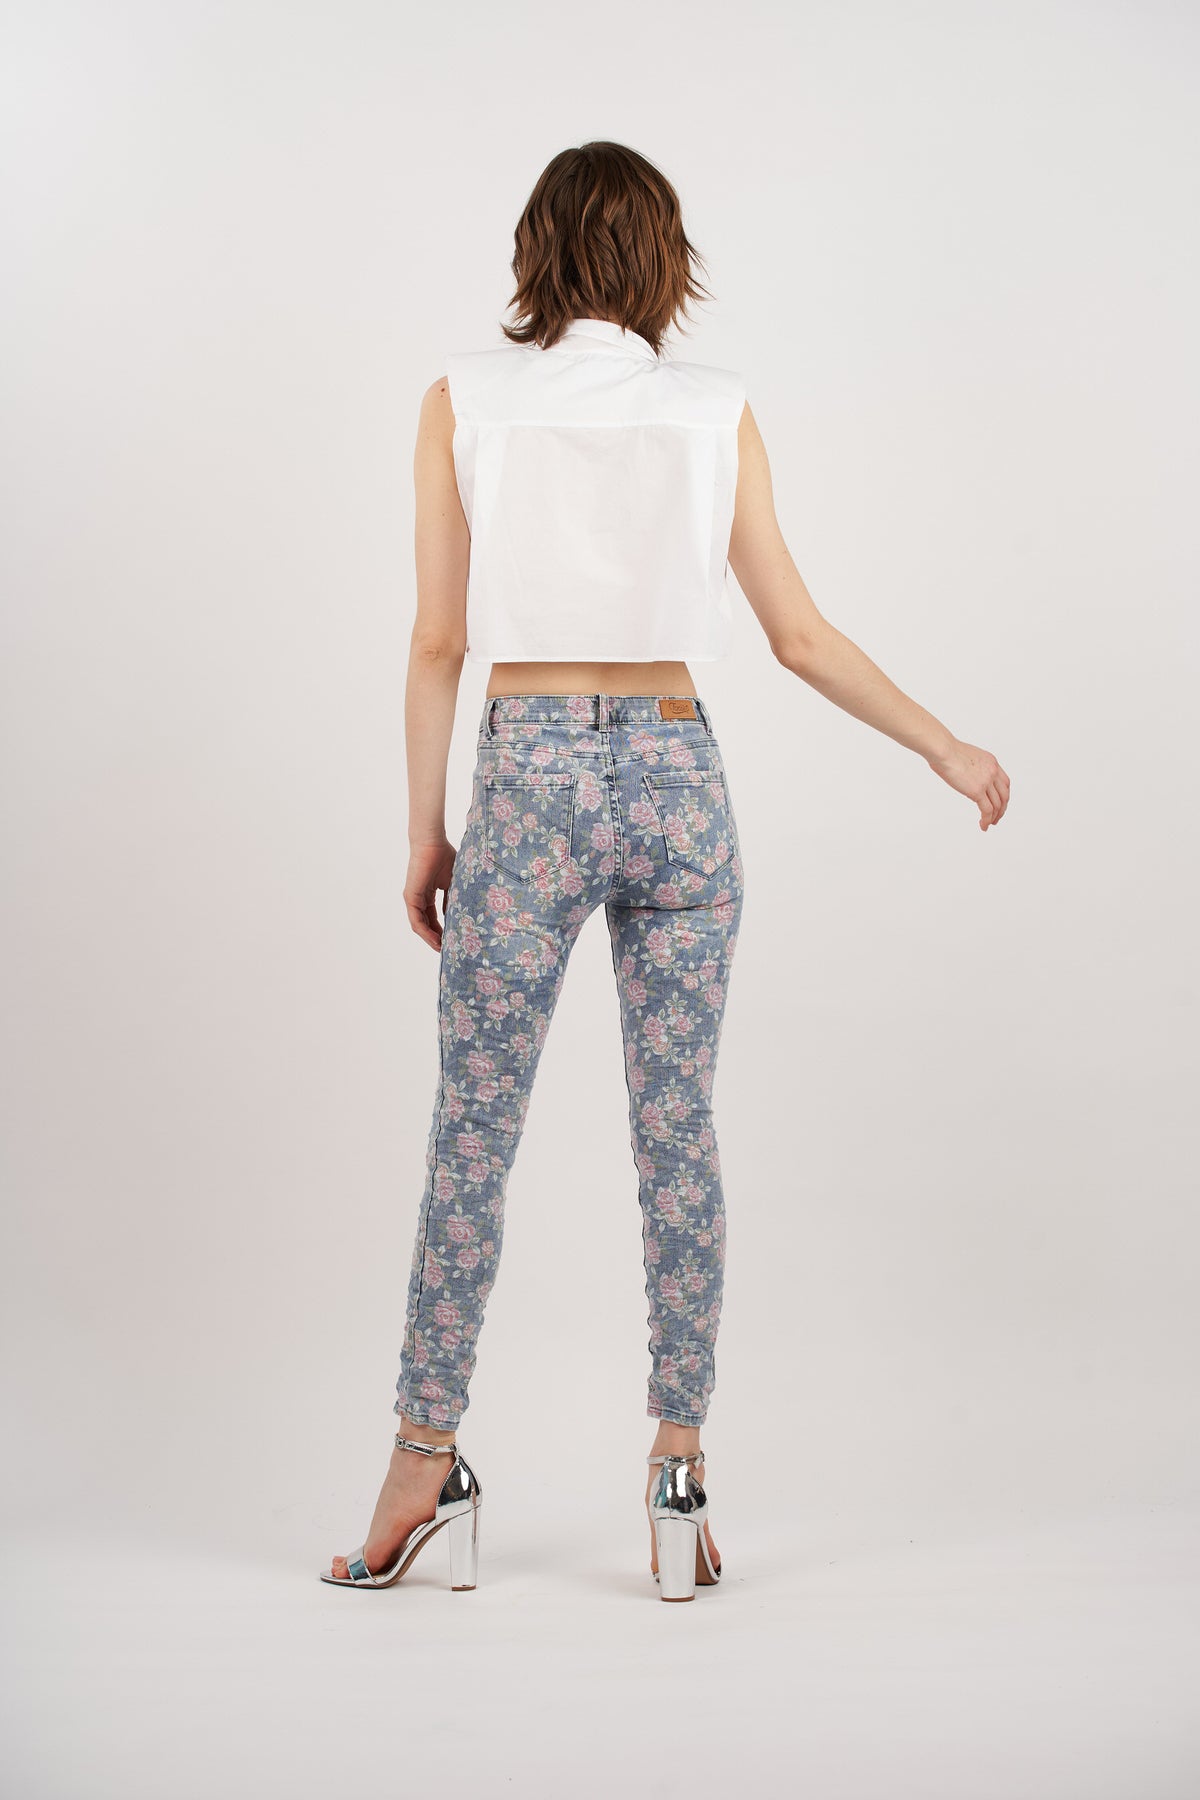 Jeans mit Blumendruck - Cora